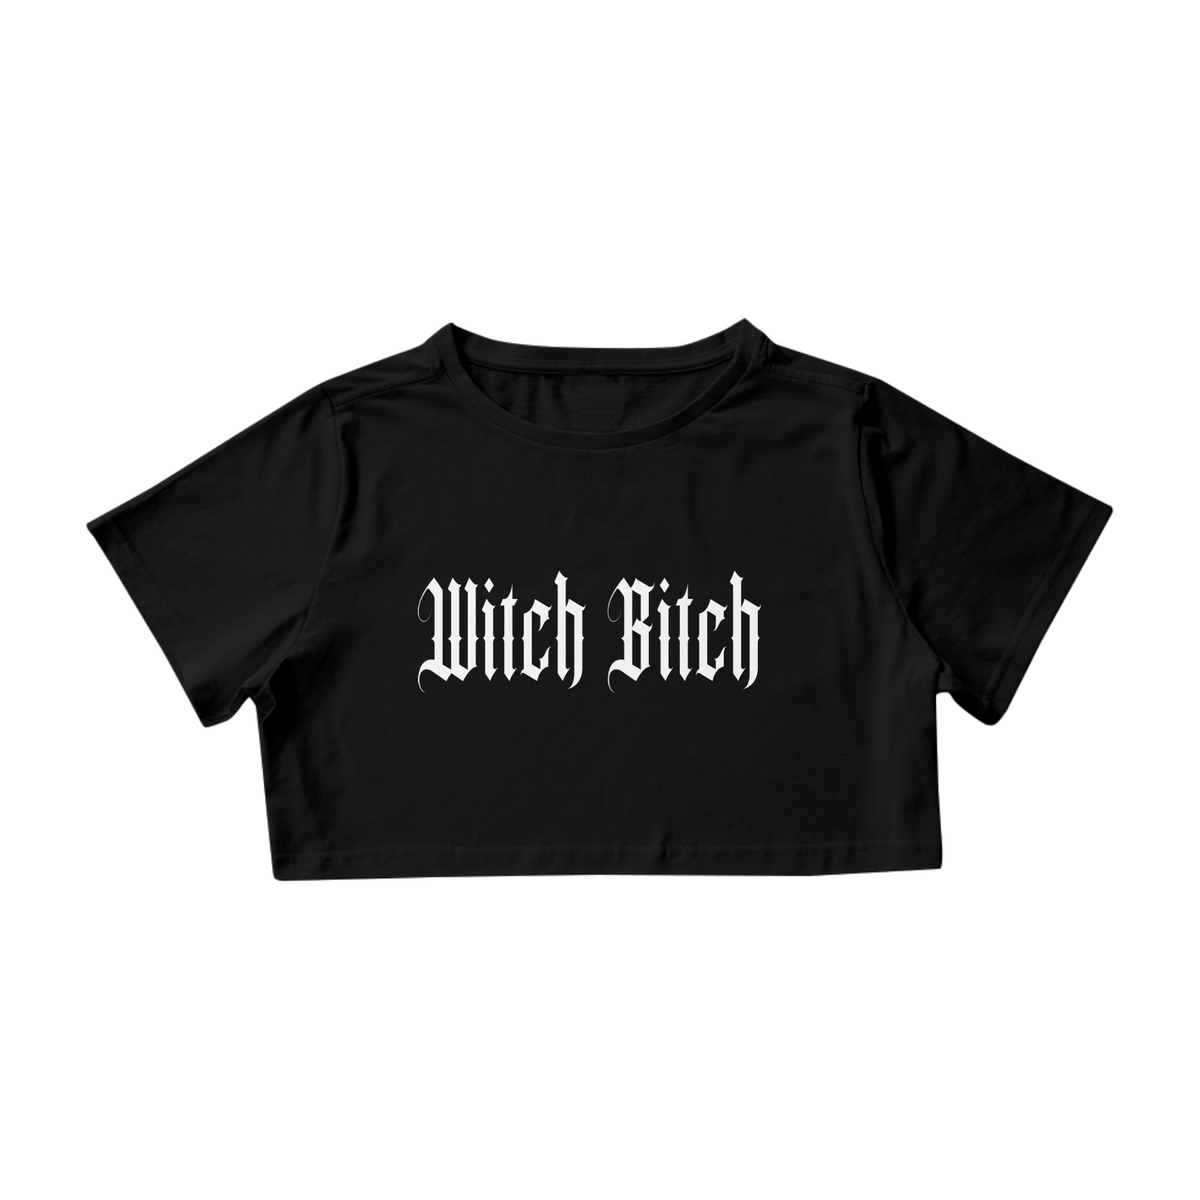 Nome do produto: Witch Bitch Cropped preta